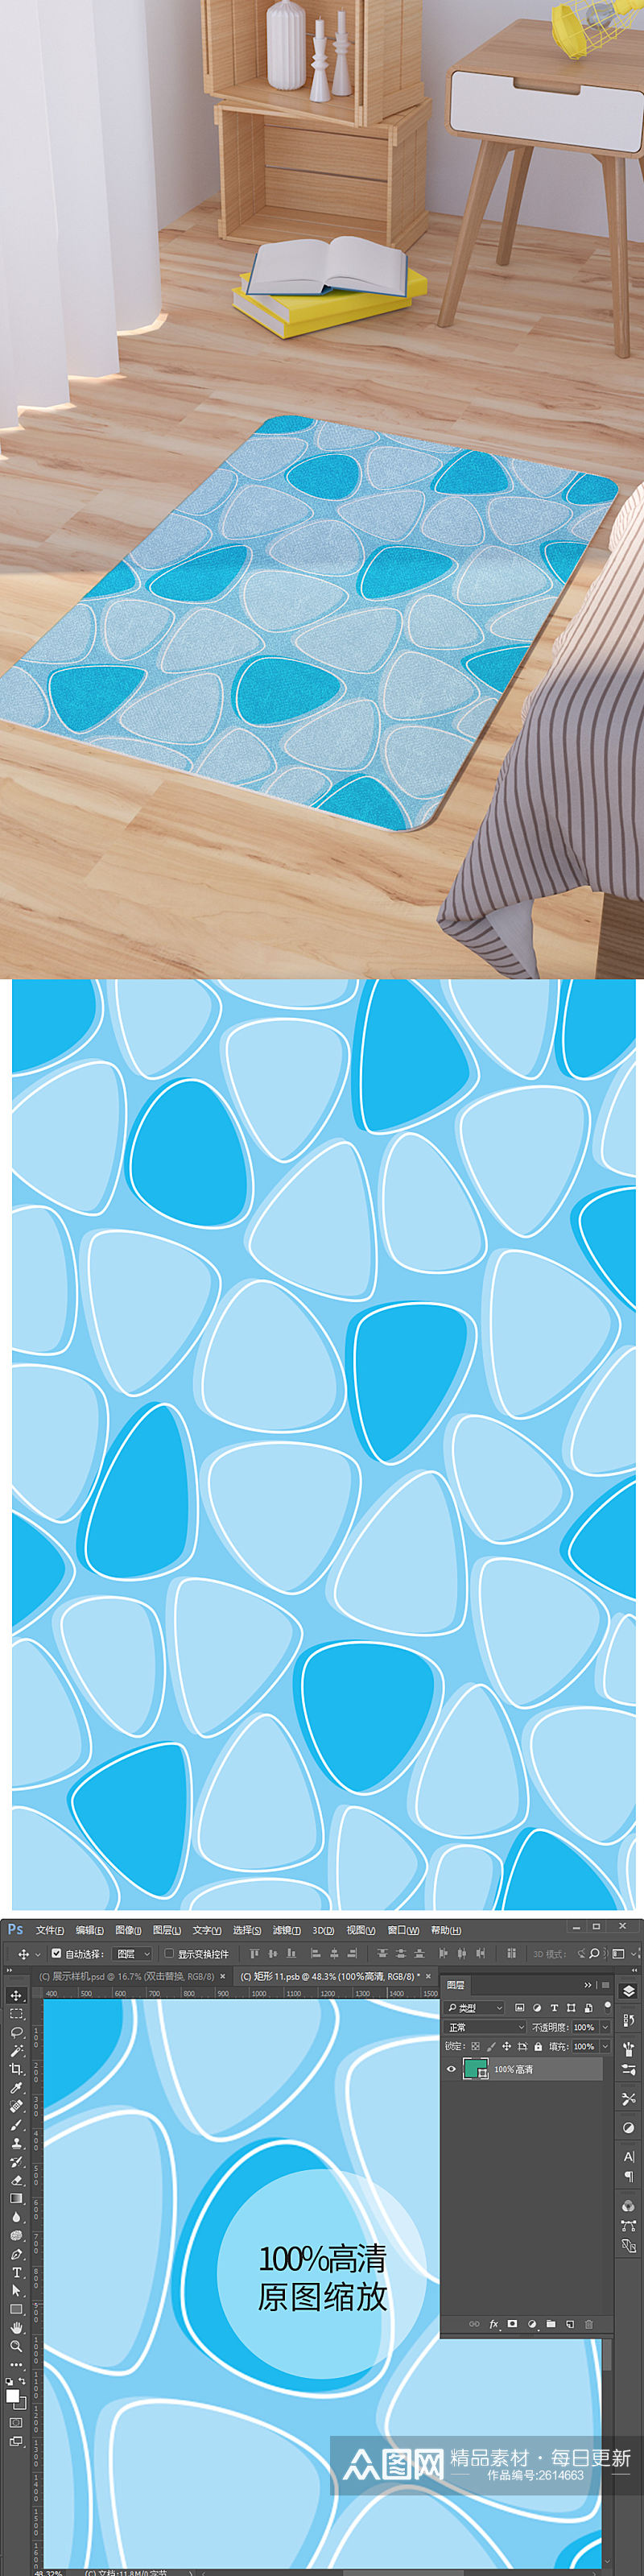 矢量手绘蓝色三角形可爱脚垫地毯图案素材